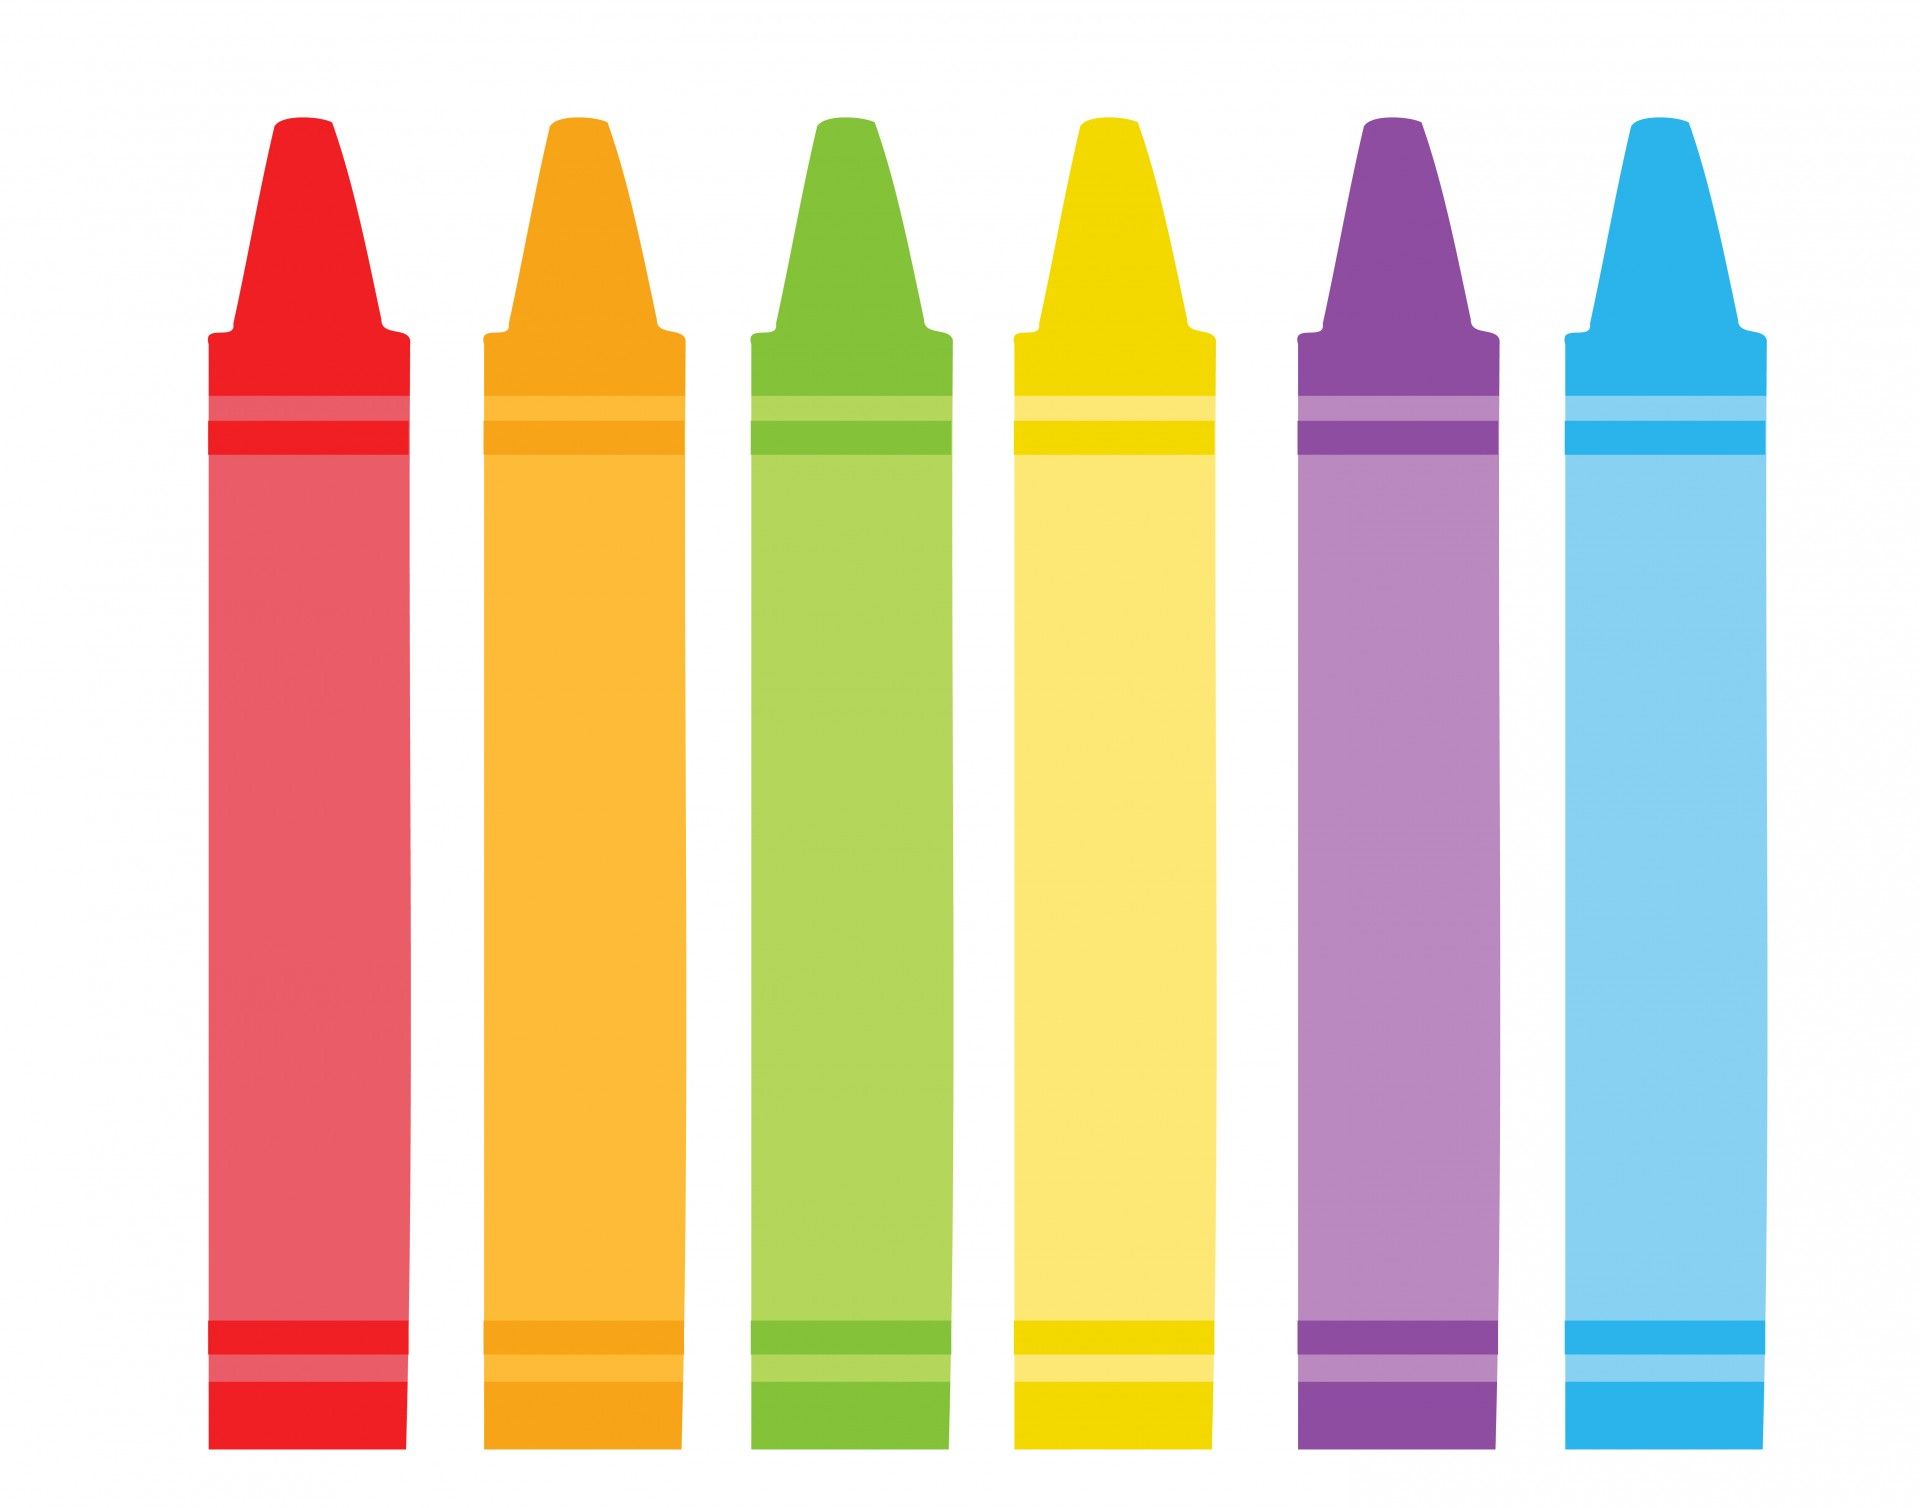 colors clipart preschool